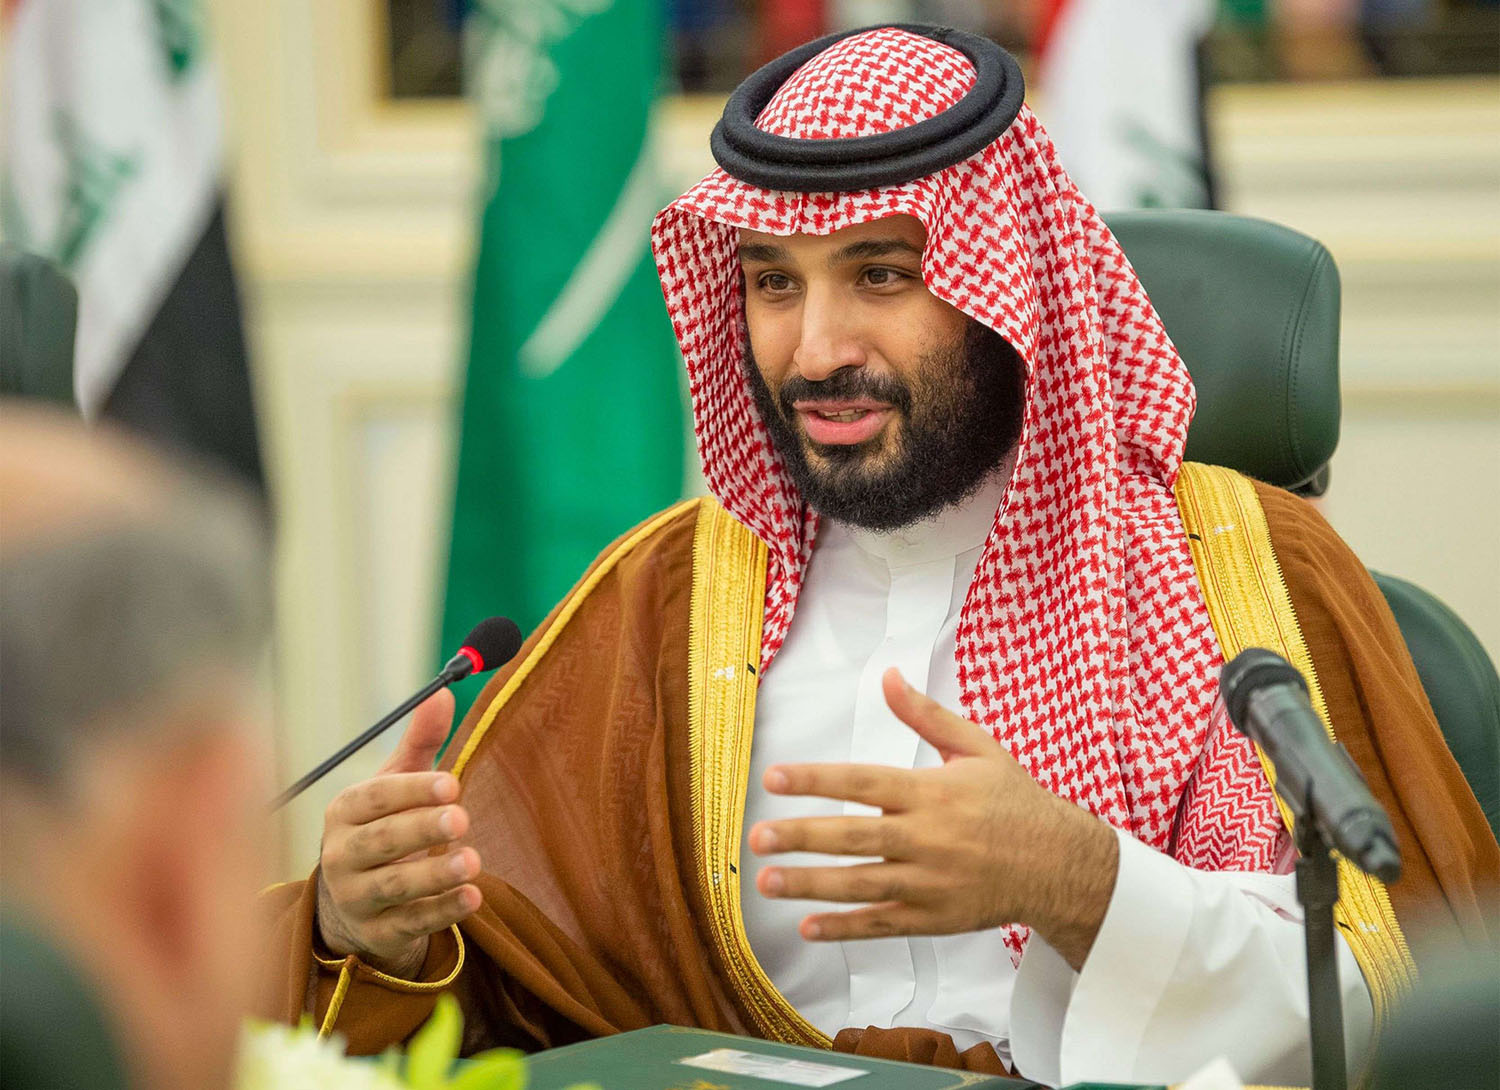 السعودية تنظر الى العراق 'بإكبار واحترام'